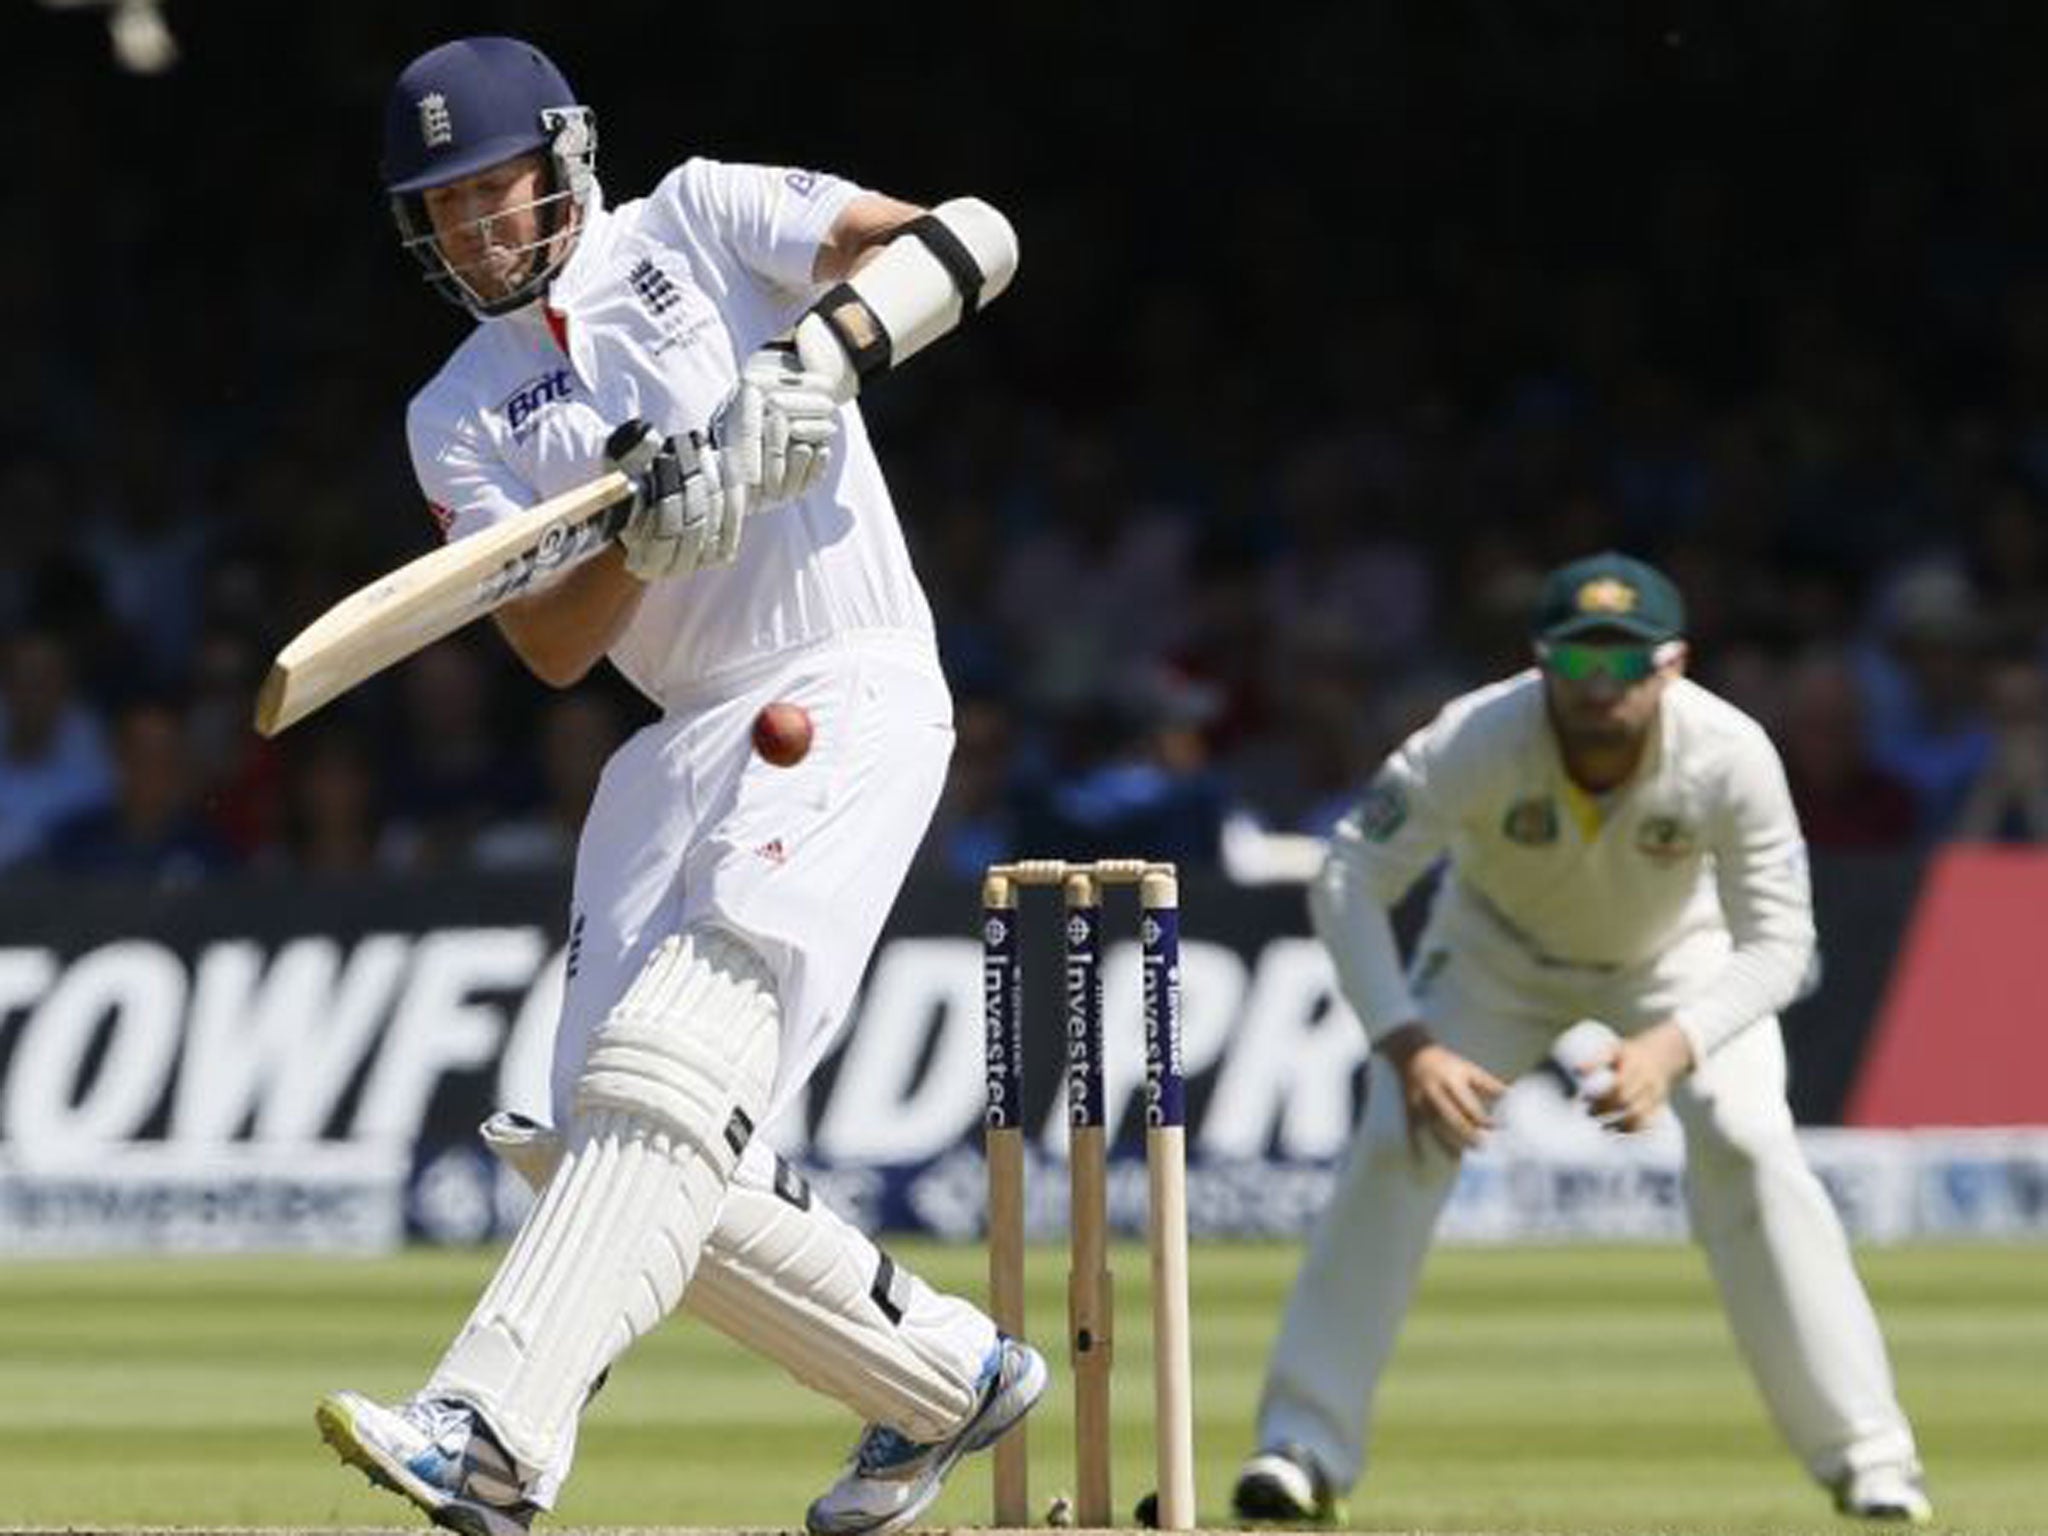 Graeme Swann scored 28 valuable runs for England yesterday